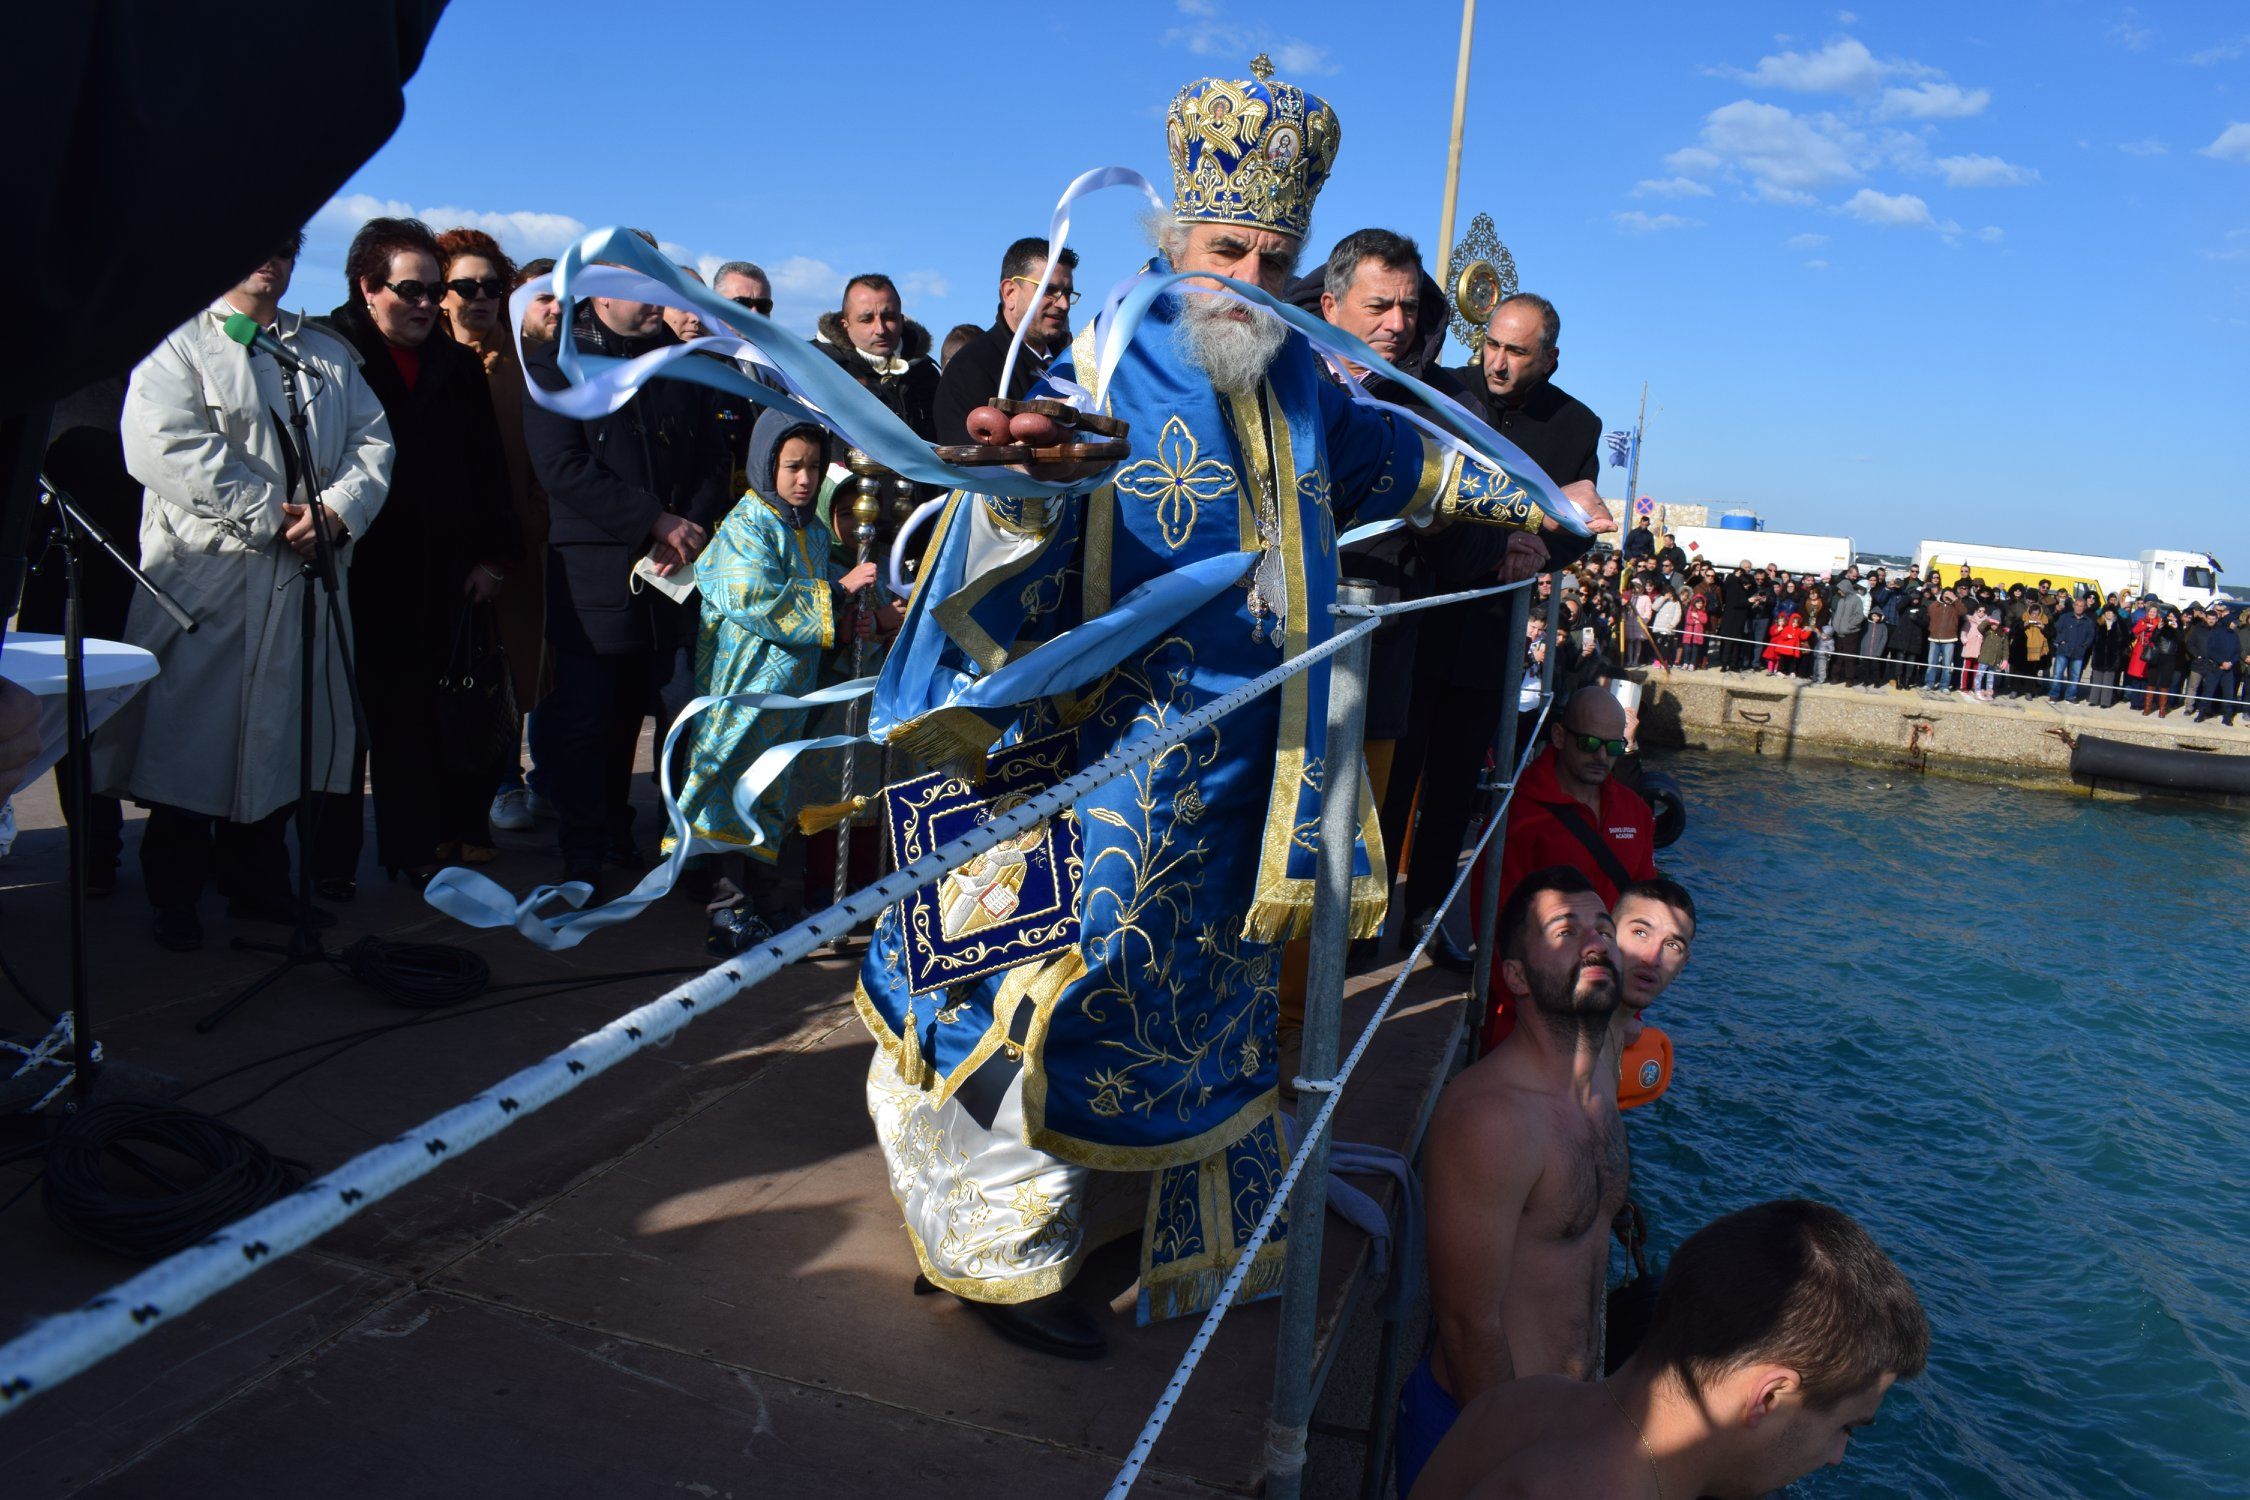 Κυλλήνη: Με επισημότητα και Θρησκευτική κατάνυξη εορτάστηκαν τα Άγια Θεοφάνεια 2020 στο λιμάνι της Κυλλήνης (Photos)